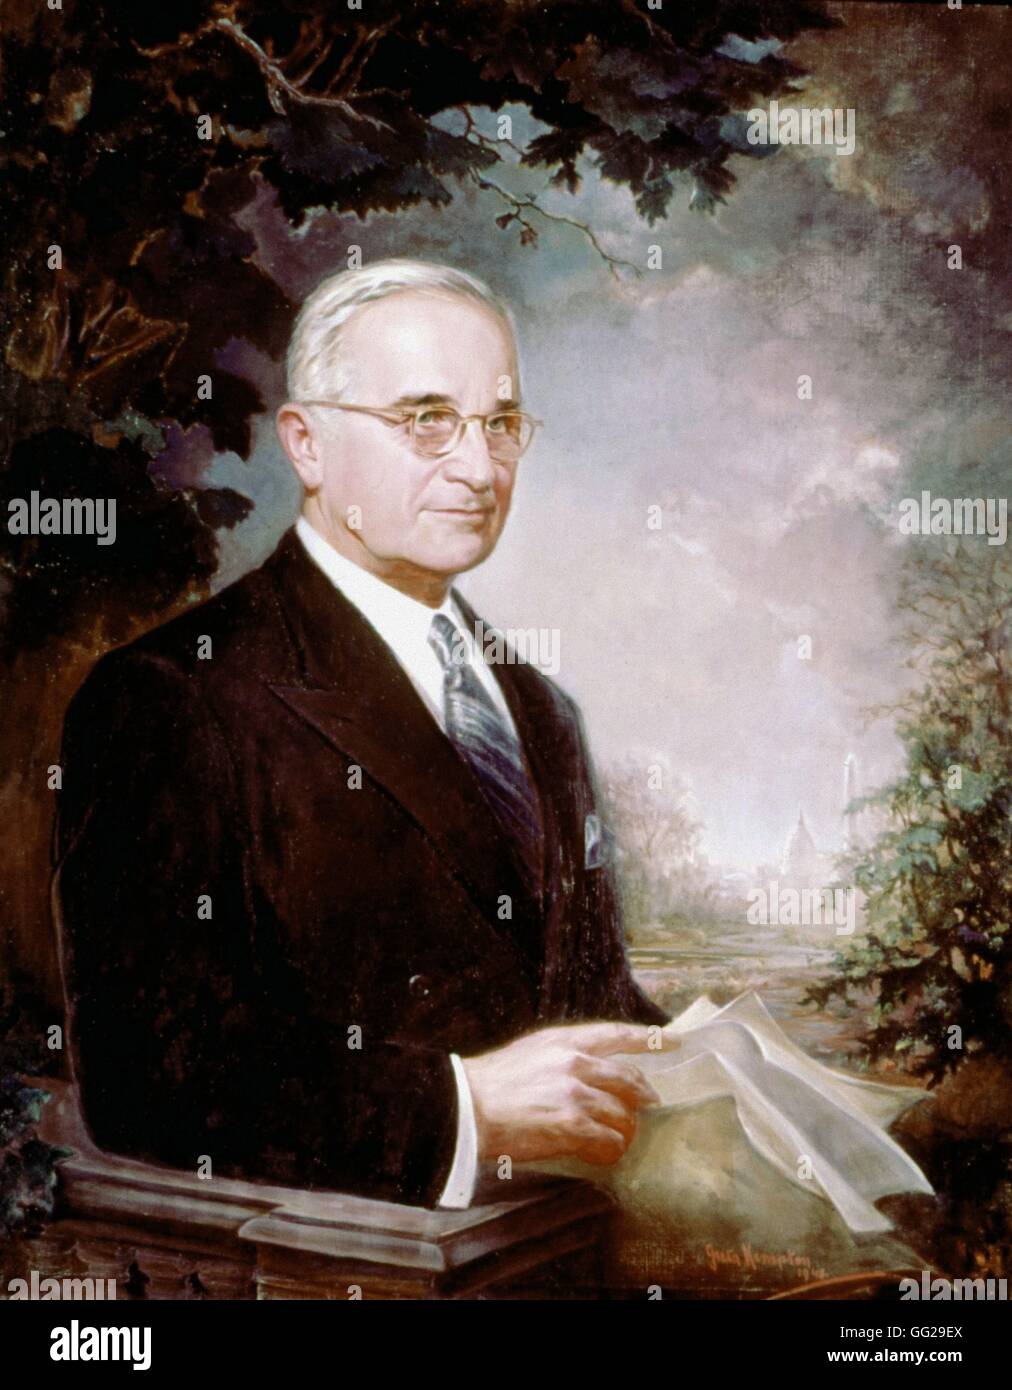 Greta Kimpton amerikanische Schule Porträt von uns Präsident Harry Truman 20. Jahrhundert Washington, National Portrait Gallery Stockfoto